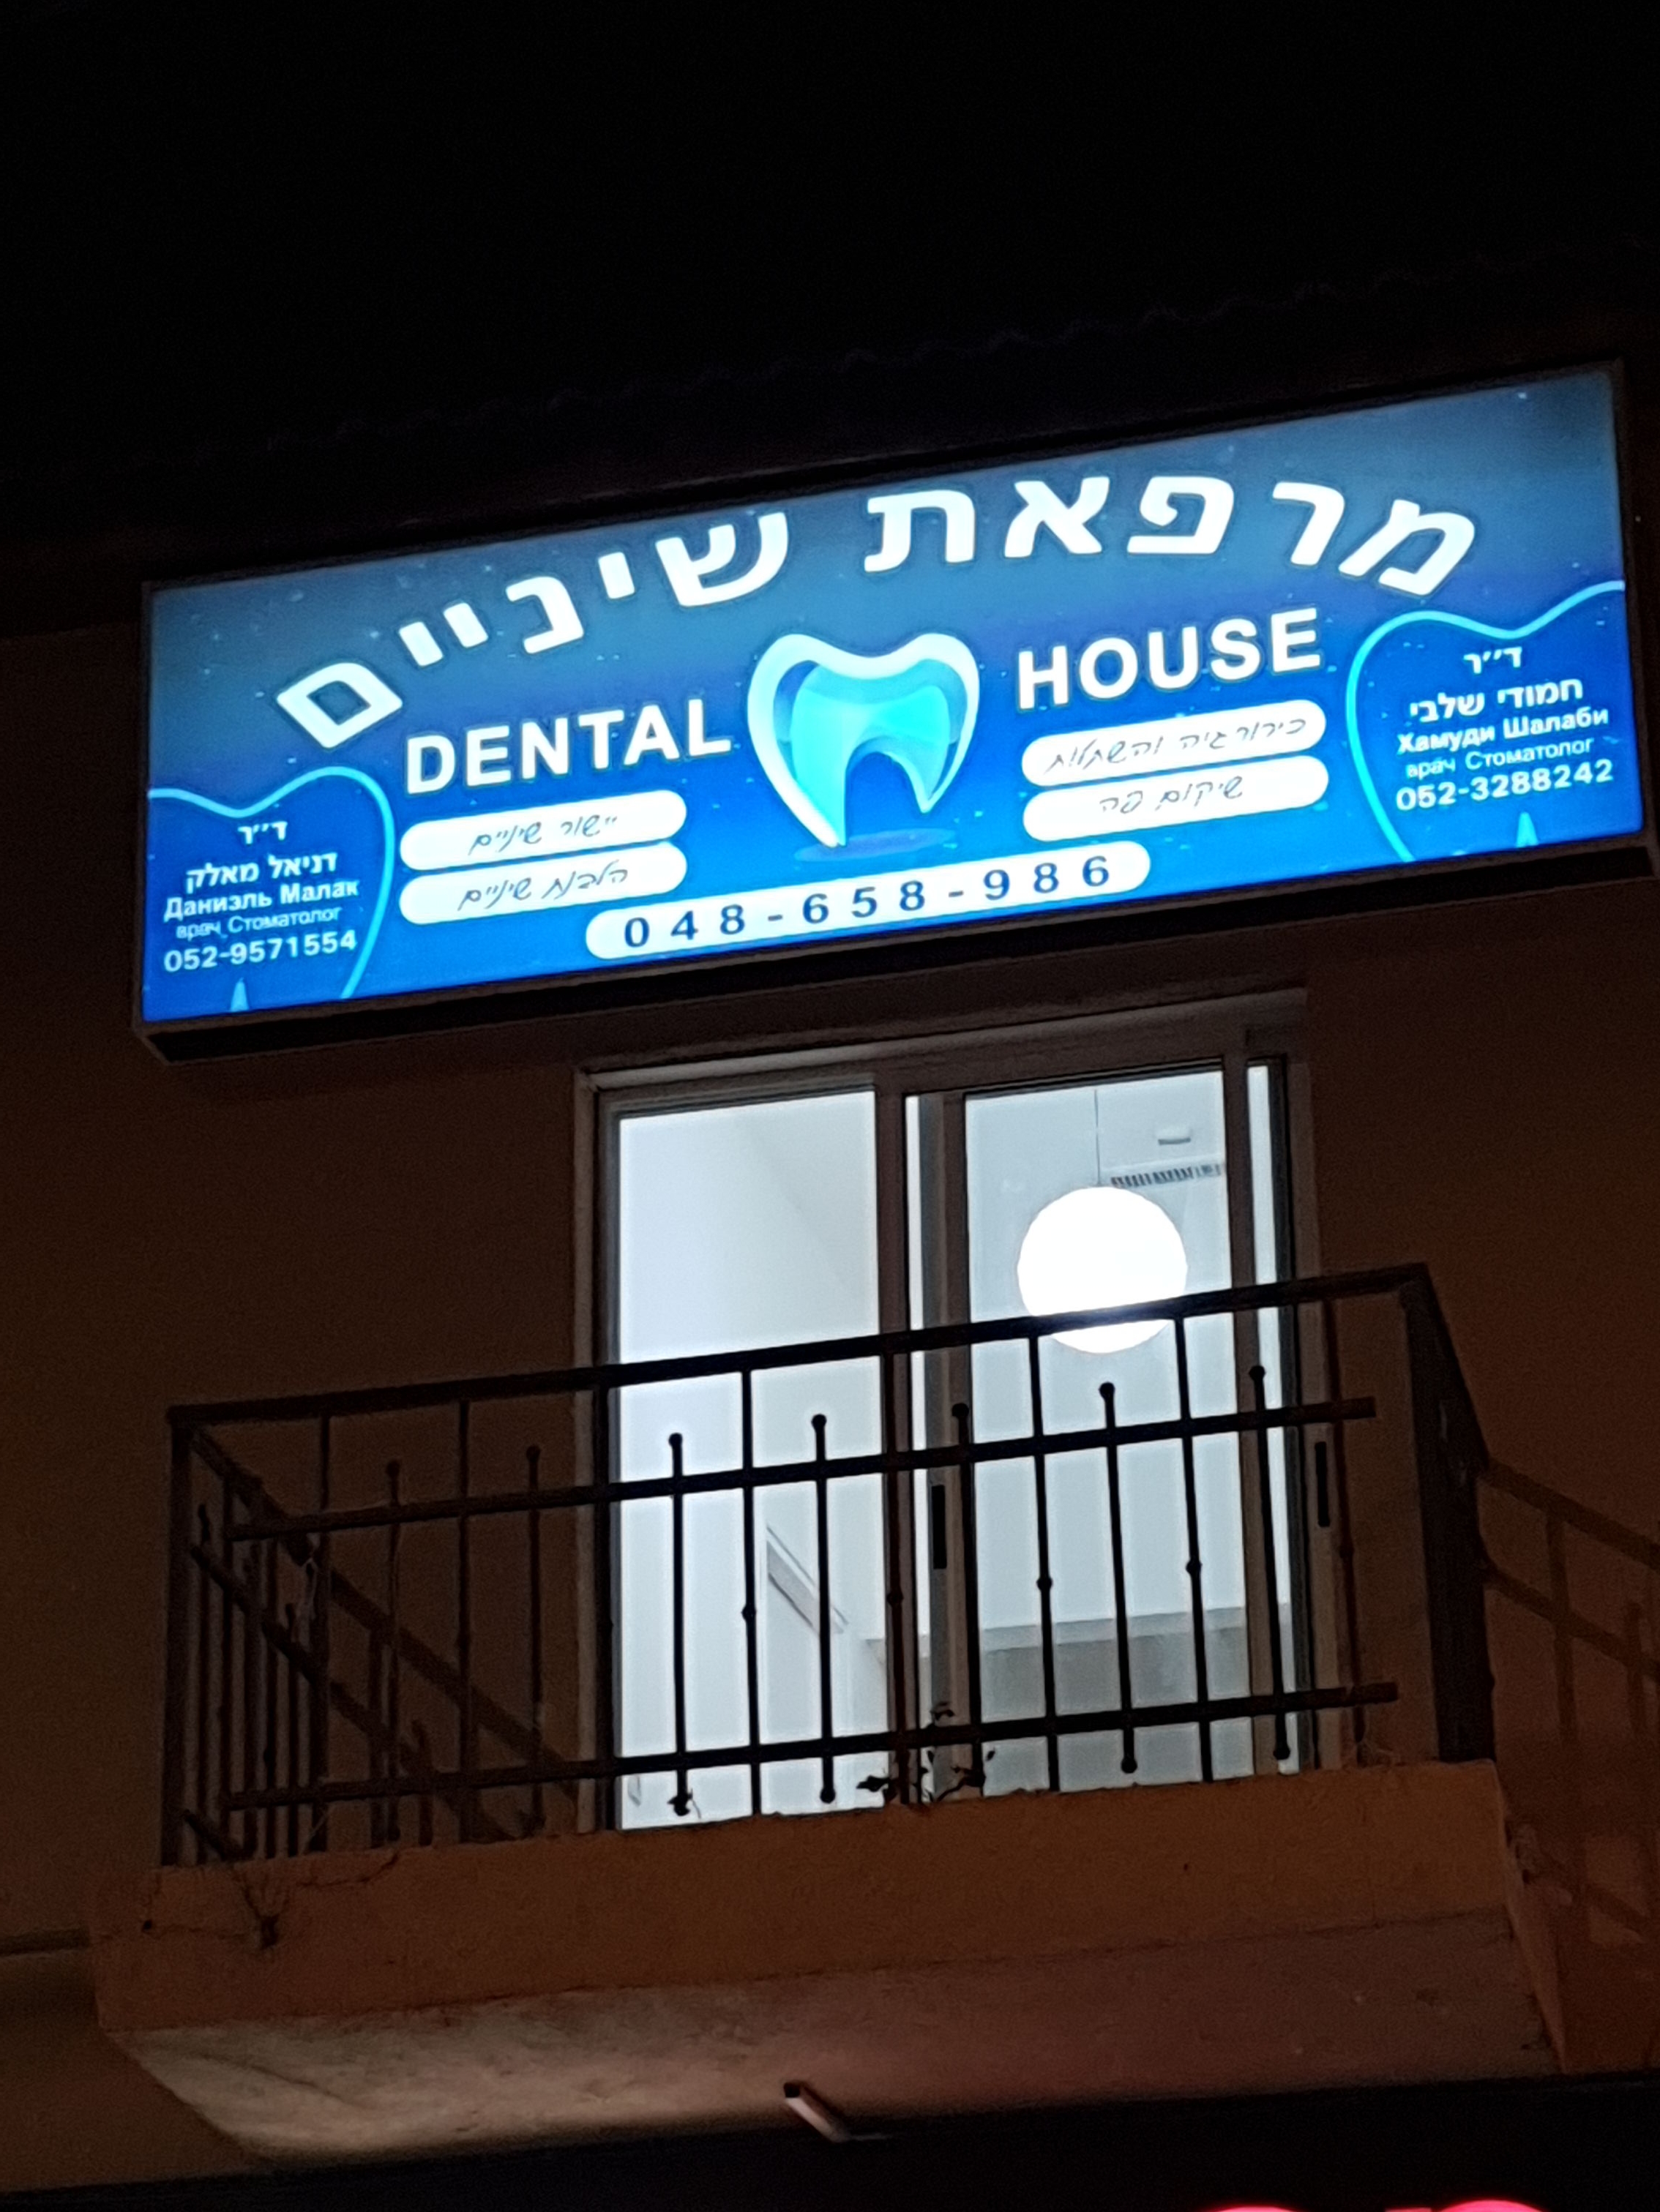 ד"ר חמודי שלבי dental house uploaded image